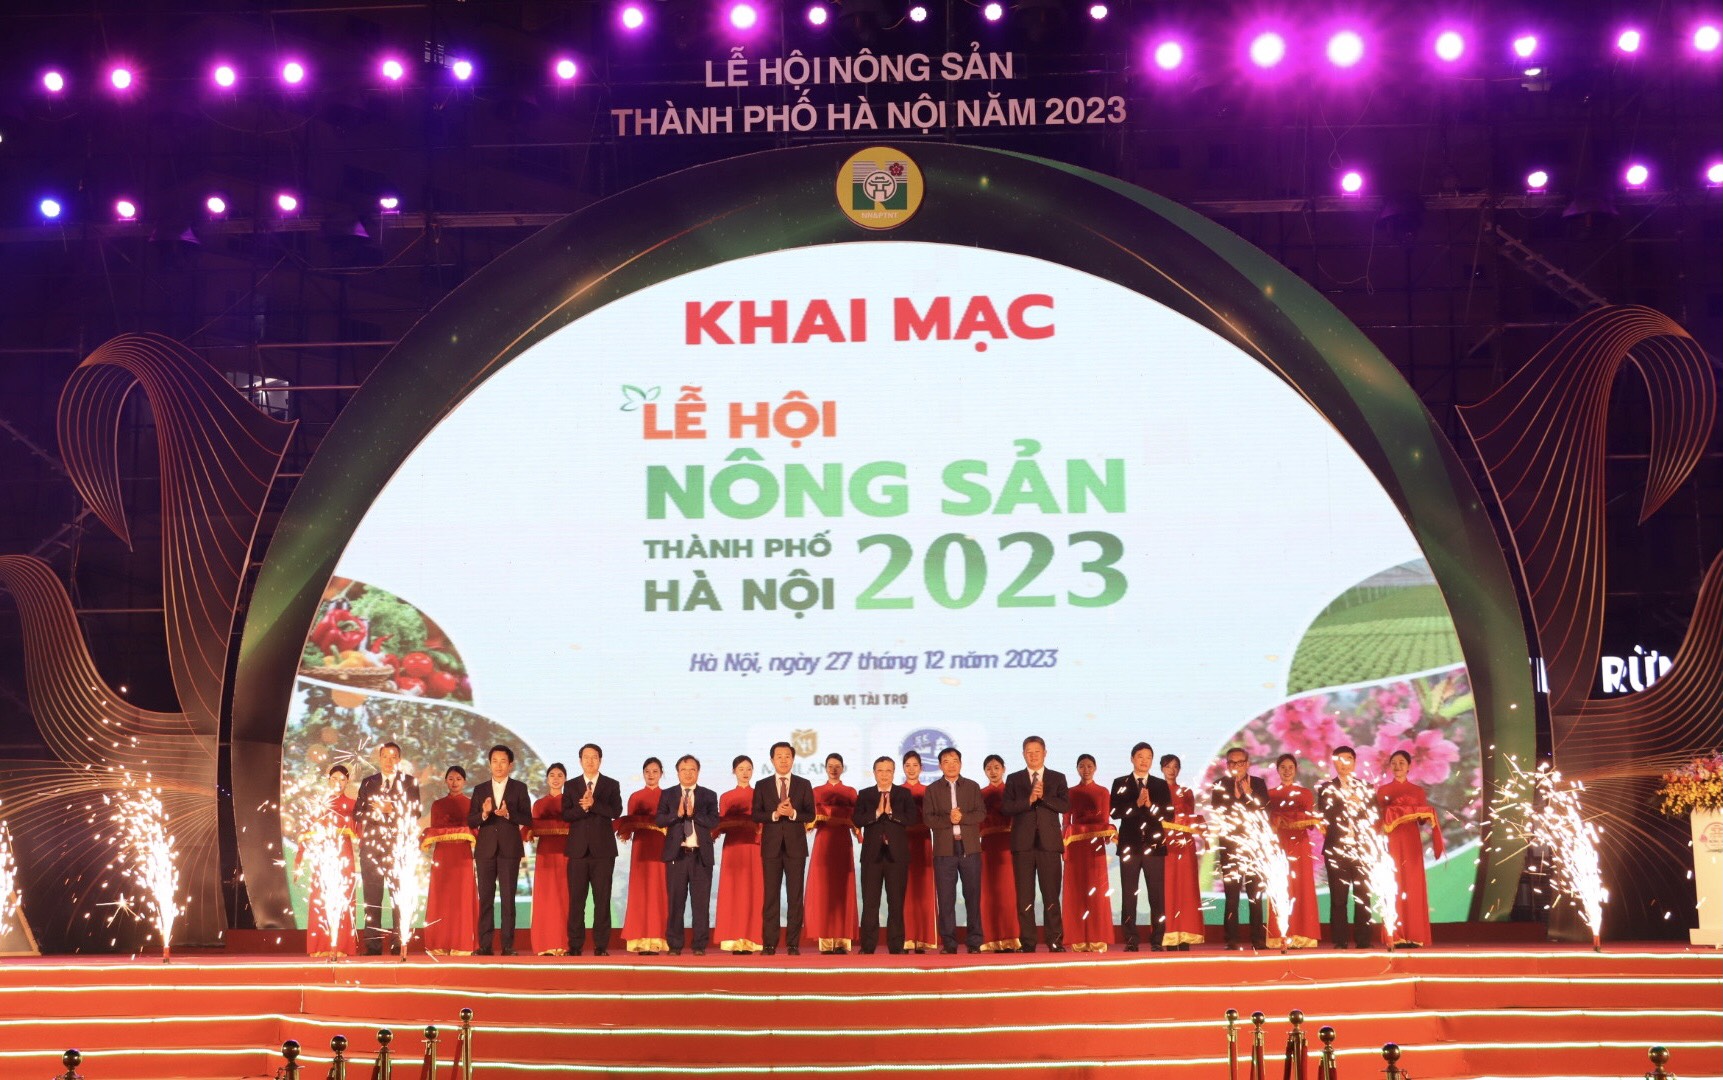 Khai mạc lễ hội nông sản Hà Nội năm 2023